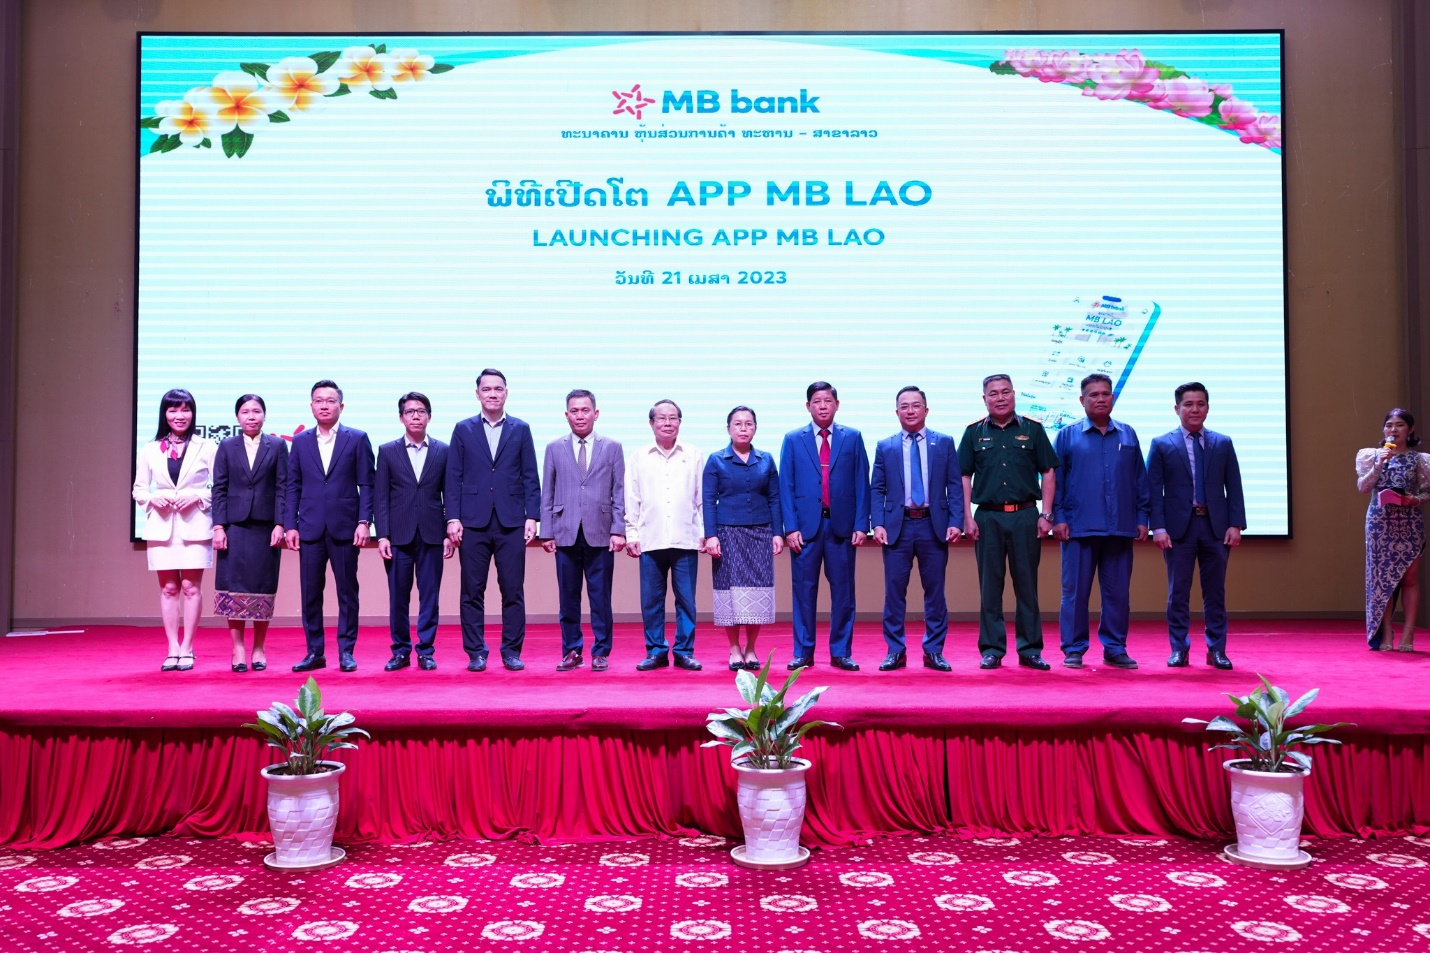 Ra mắt ứng dụng ngân hàng App MB Lào - Ảnh 2.